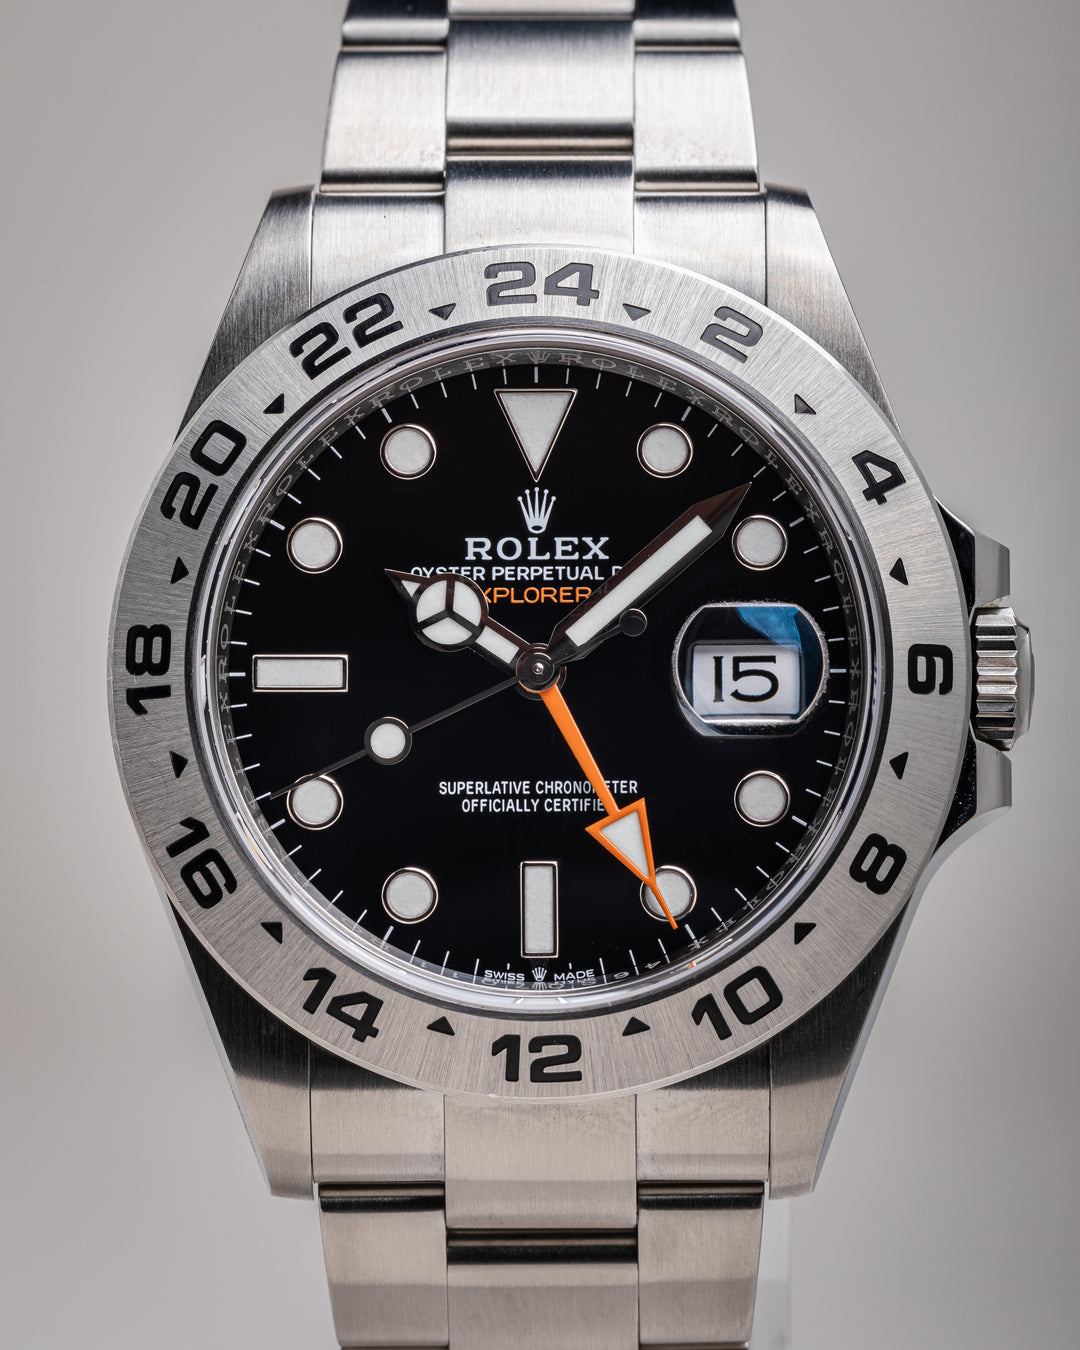 Rolex Stainless Steel Explorer II (226570)